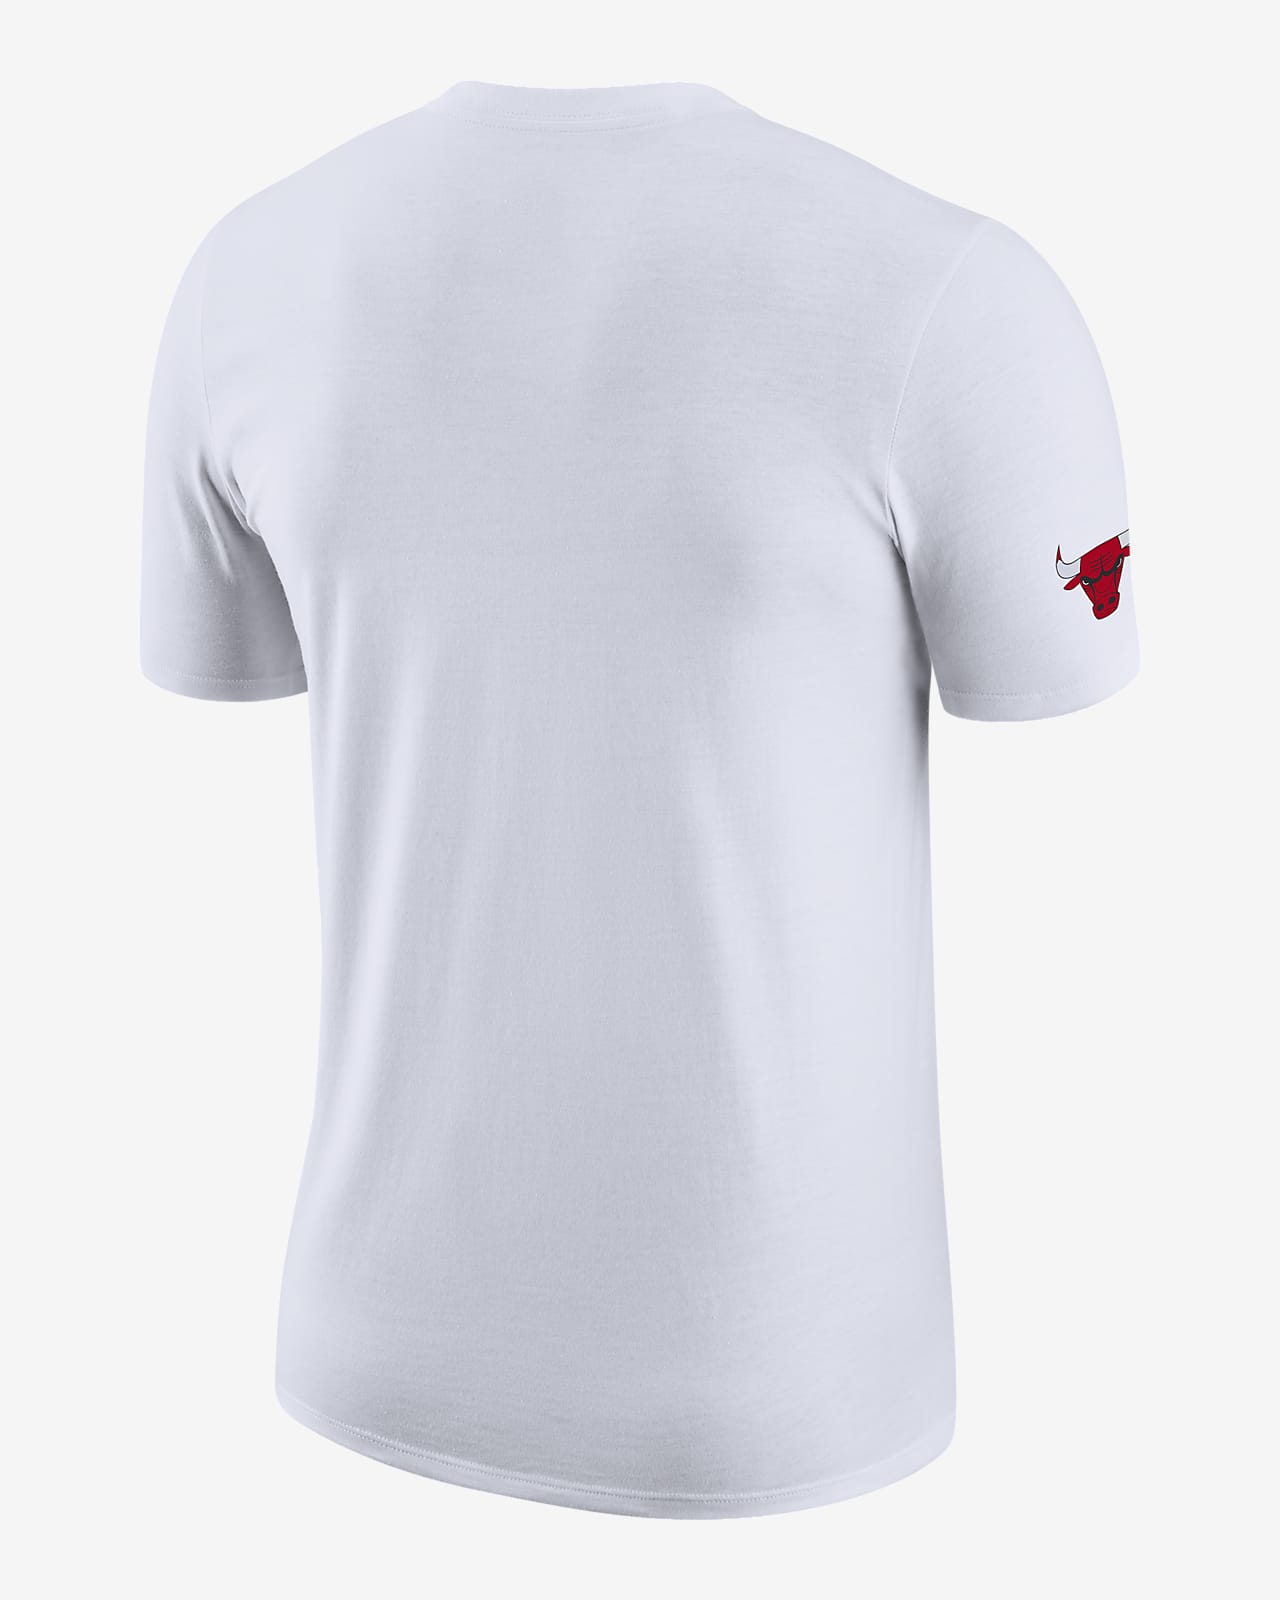 Chicago Bulls Statement Edition Camiseta Jordan - Hombre. ES